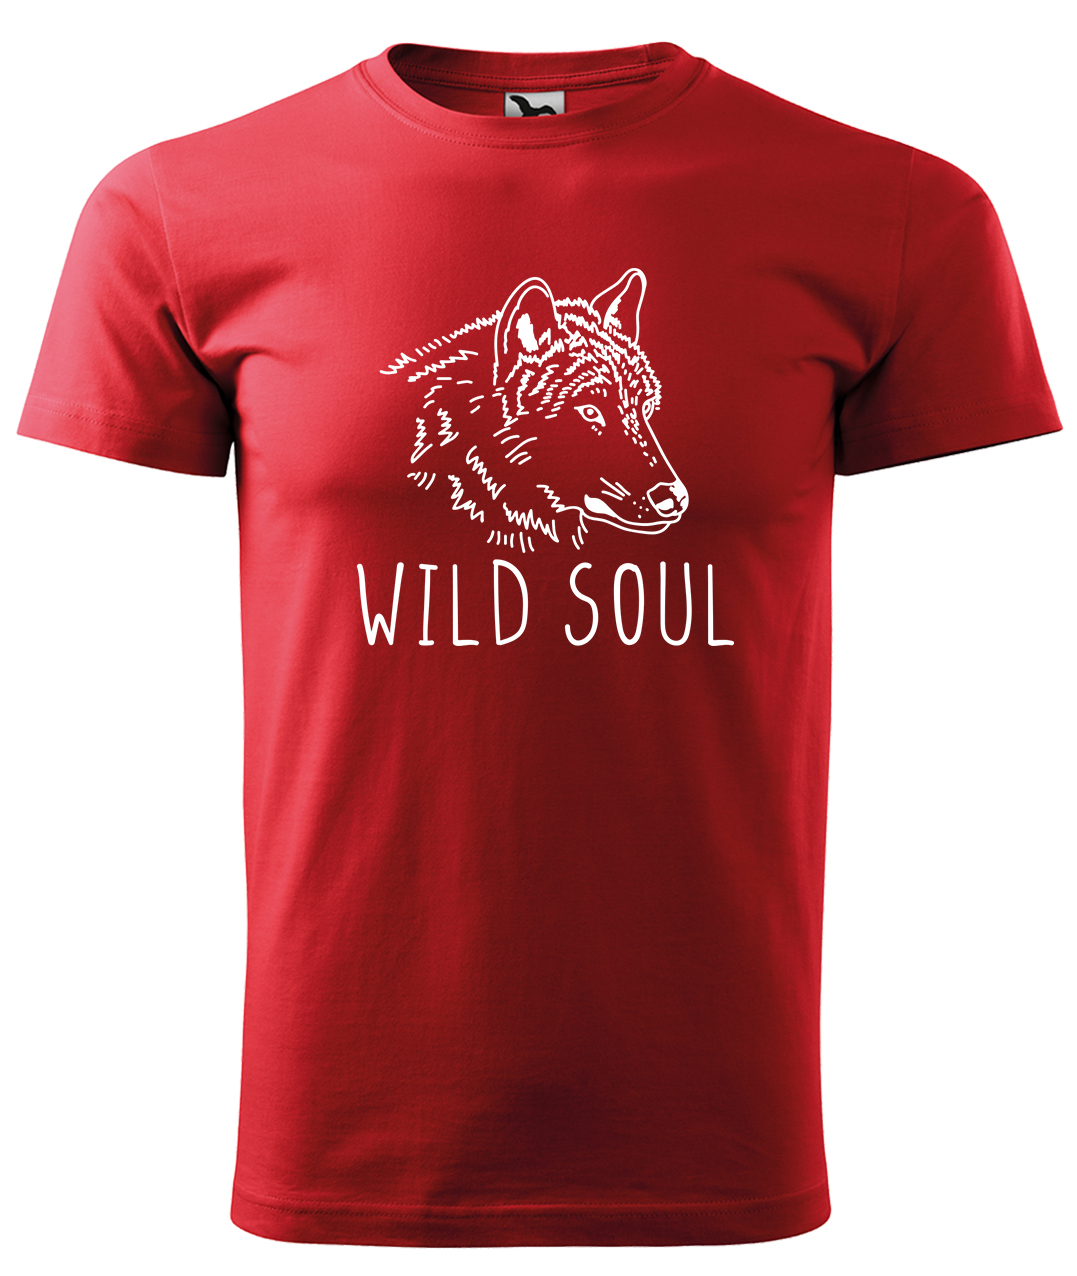 Dětské tričko s vlkem - Wild soul Velikost: 6 let / 122 cm, Barva: Červená (07), Délka rukávu: Krátký rukáv